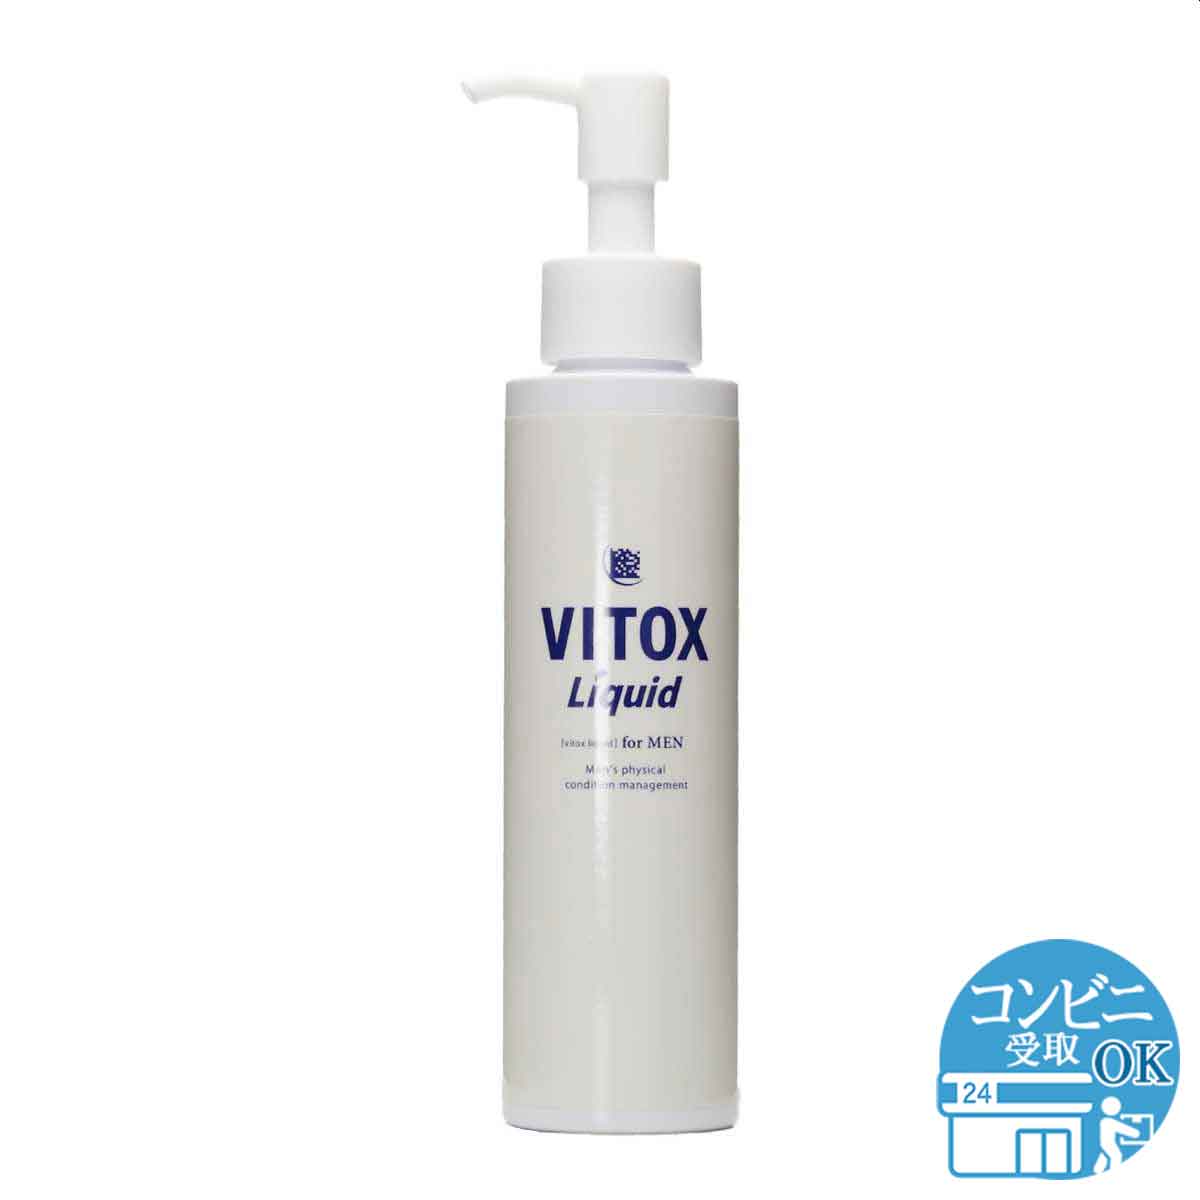 ヴィトックス リキッド vitox liquid 120ml ( 約1ヵ月分 ) MEN LABO ビトックス 配送料無料NYH / ヴィトックスリキッドF06-A1 / VITXLQ-01P